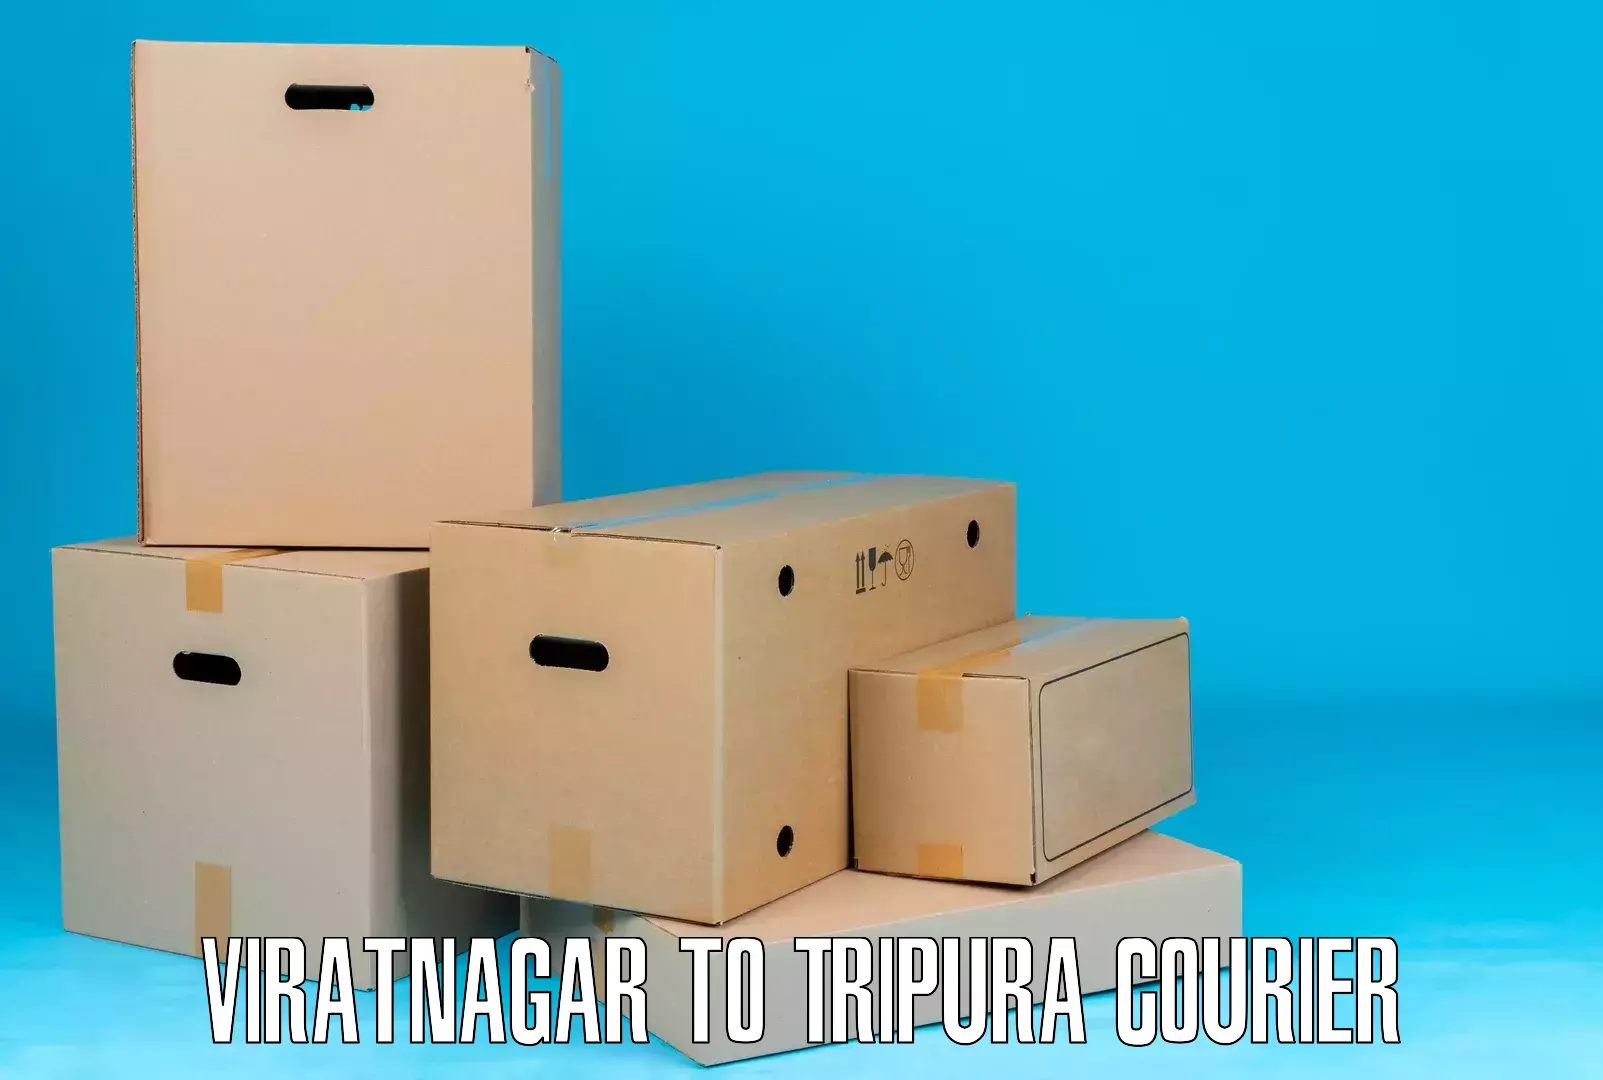 Heavy parcel delivery in Viratnagar to Santirbazar